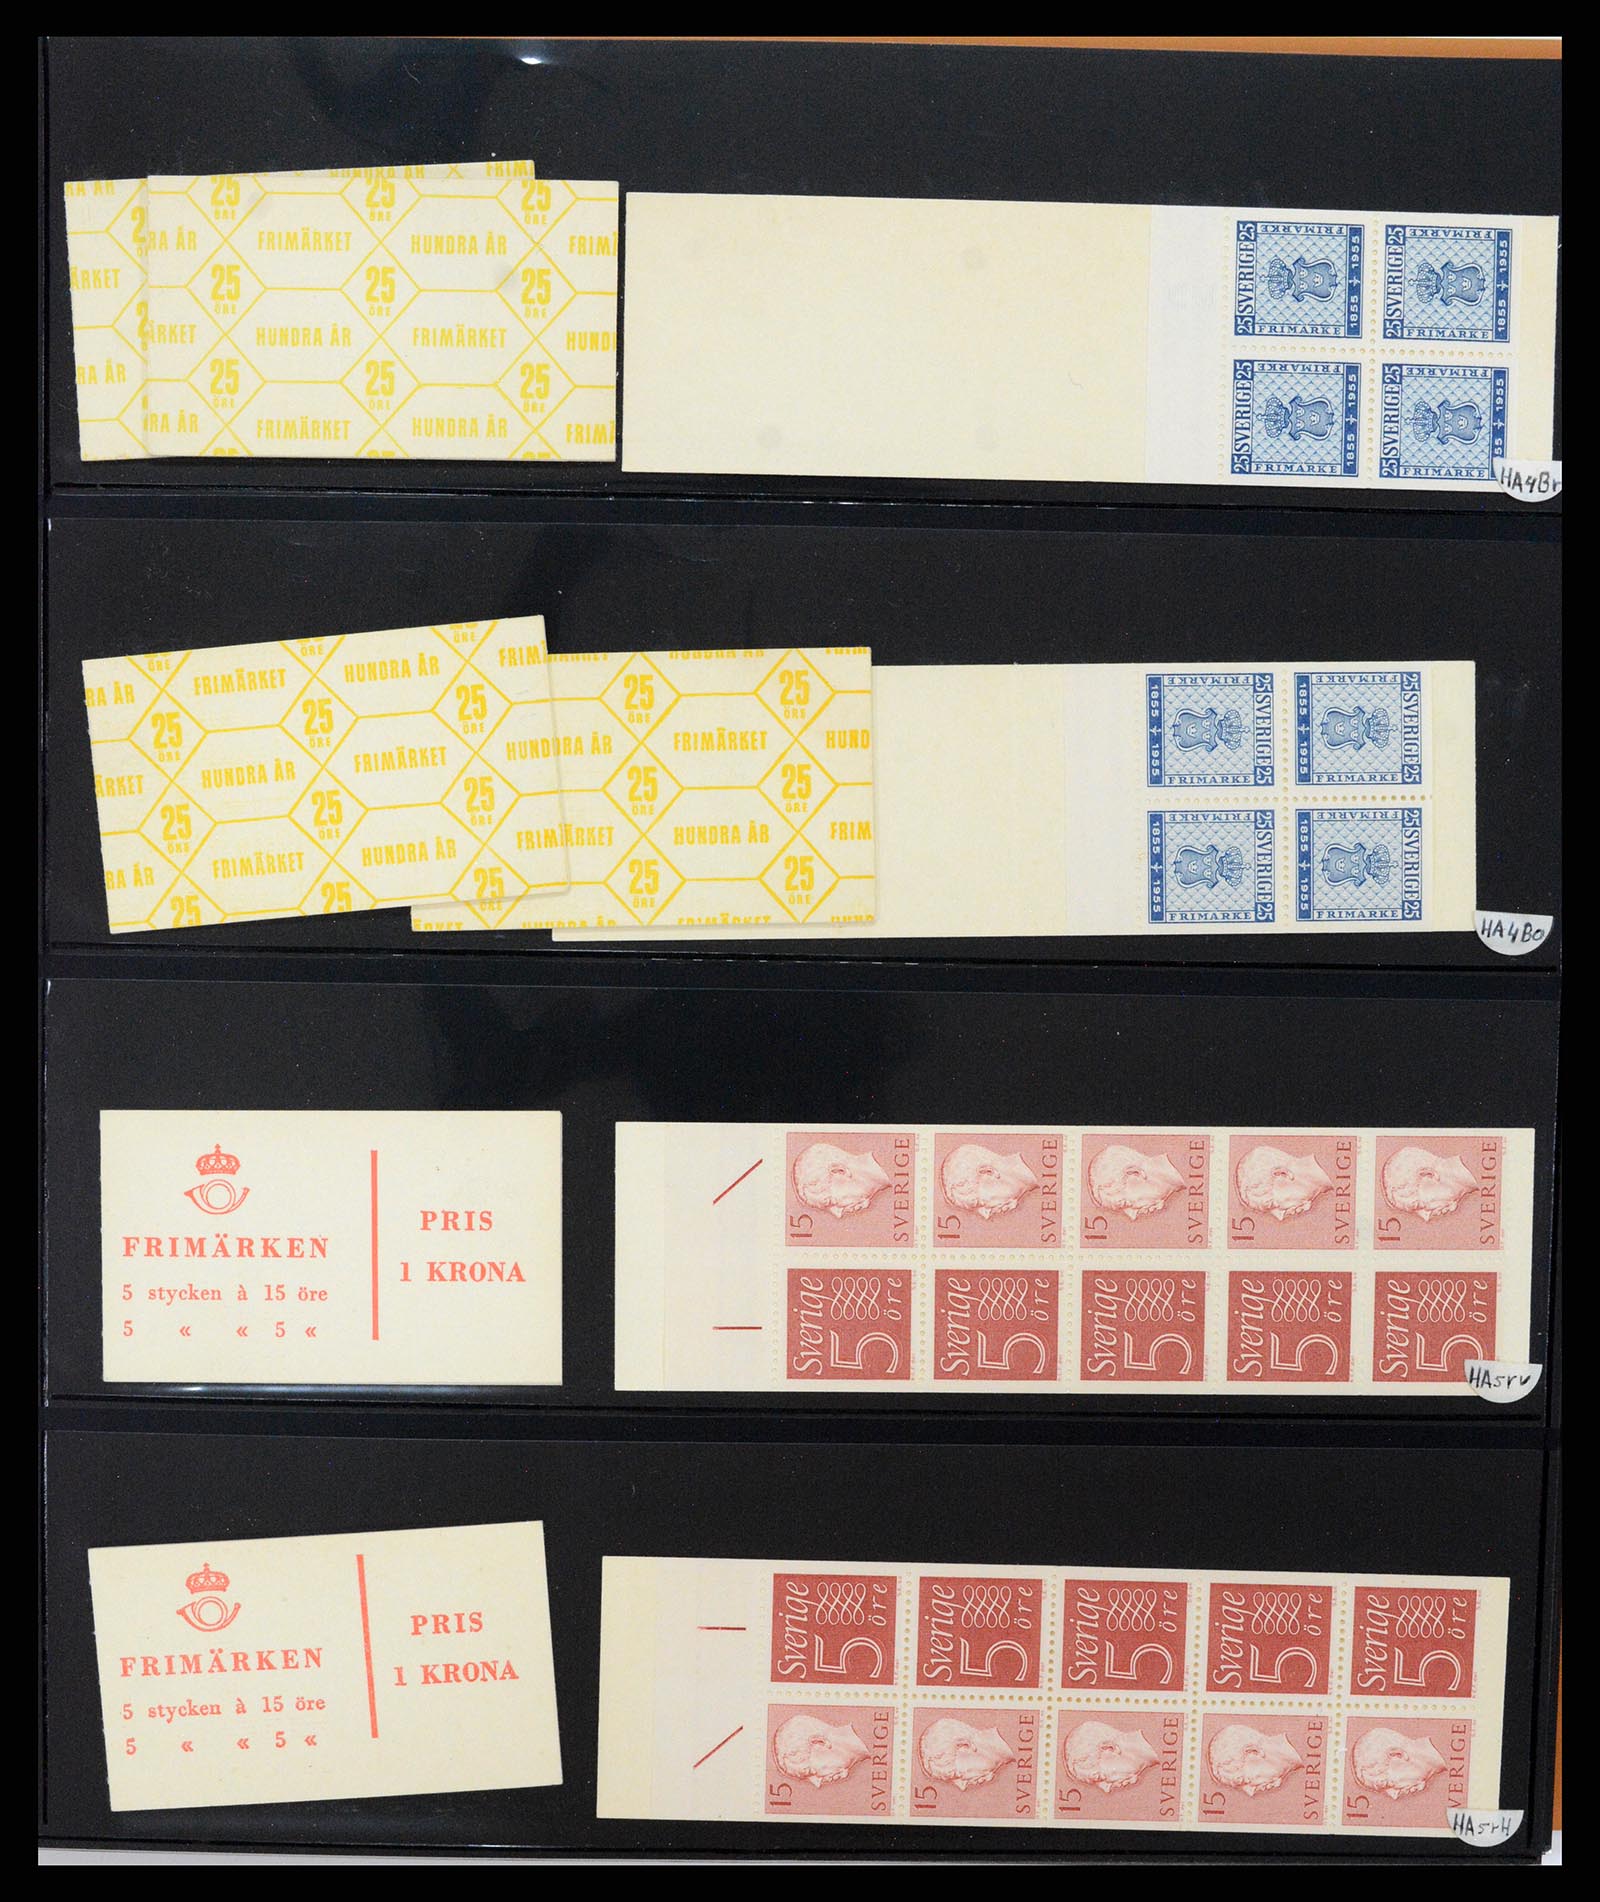 37345 057 - Stamp collection 37345 European countries souvenir sheets.